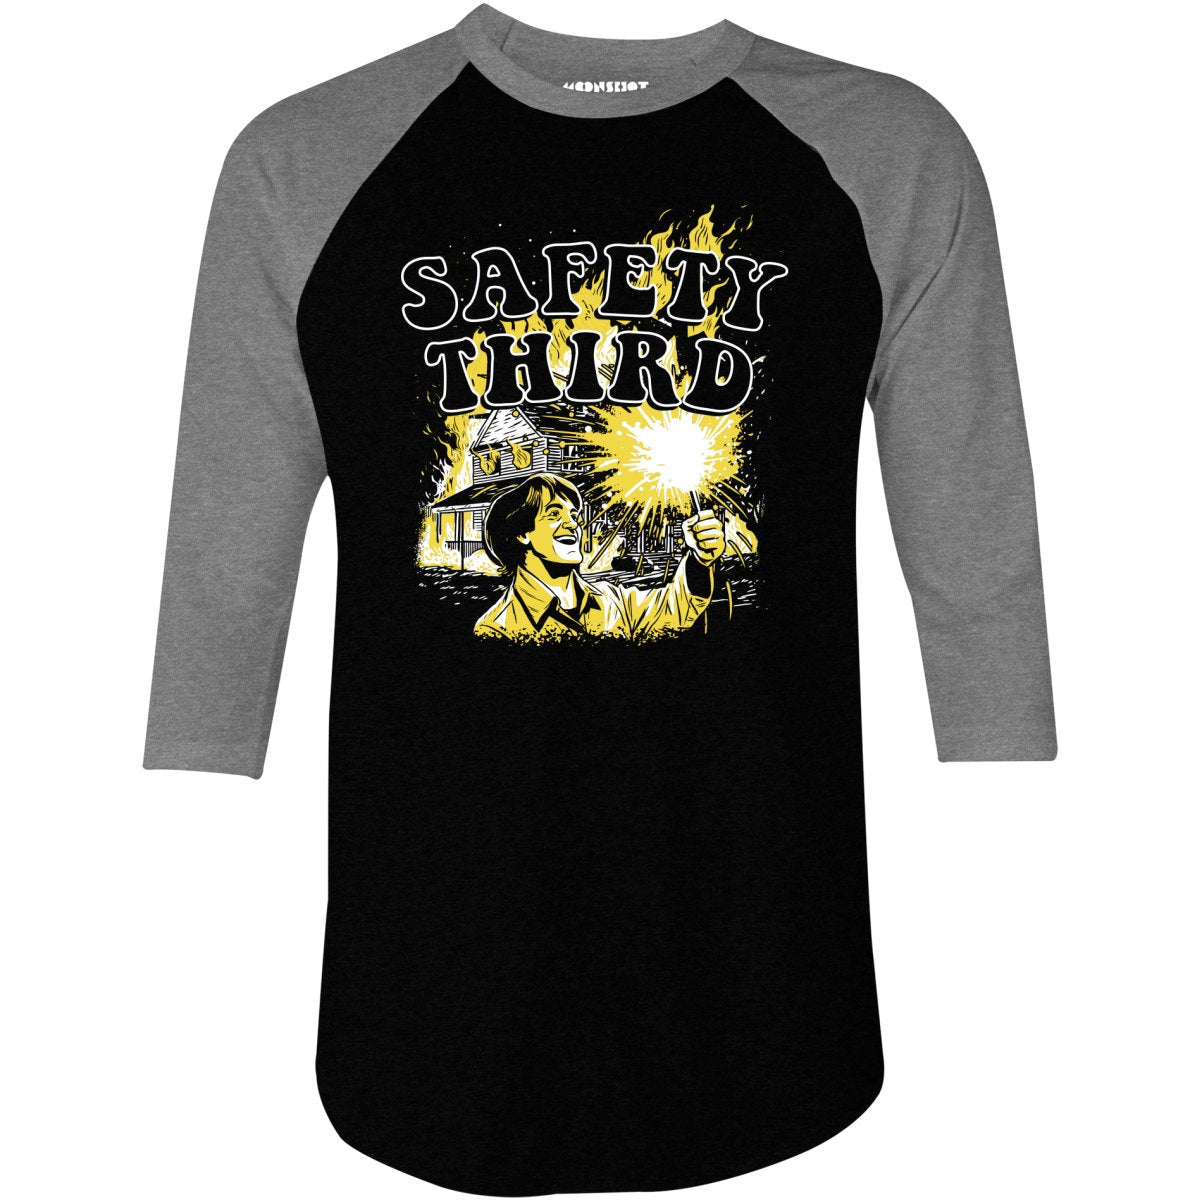 Safety Third Fire - 3/4 Sleeve Raglan T-Shirt